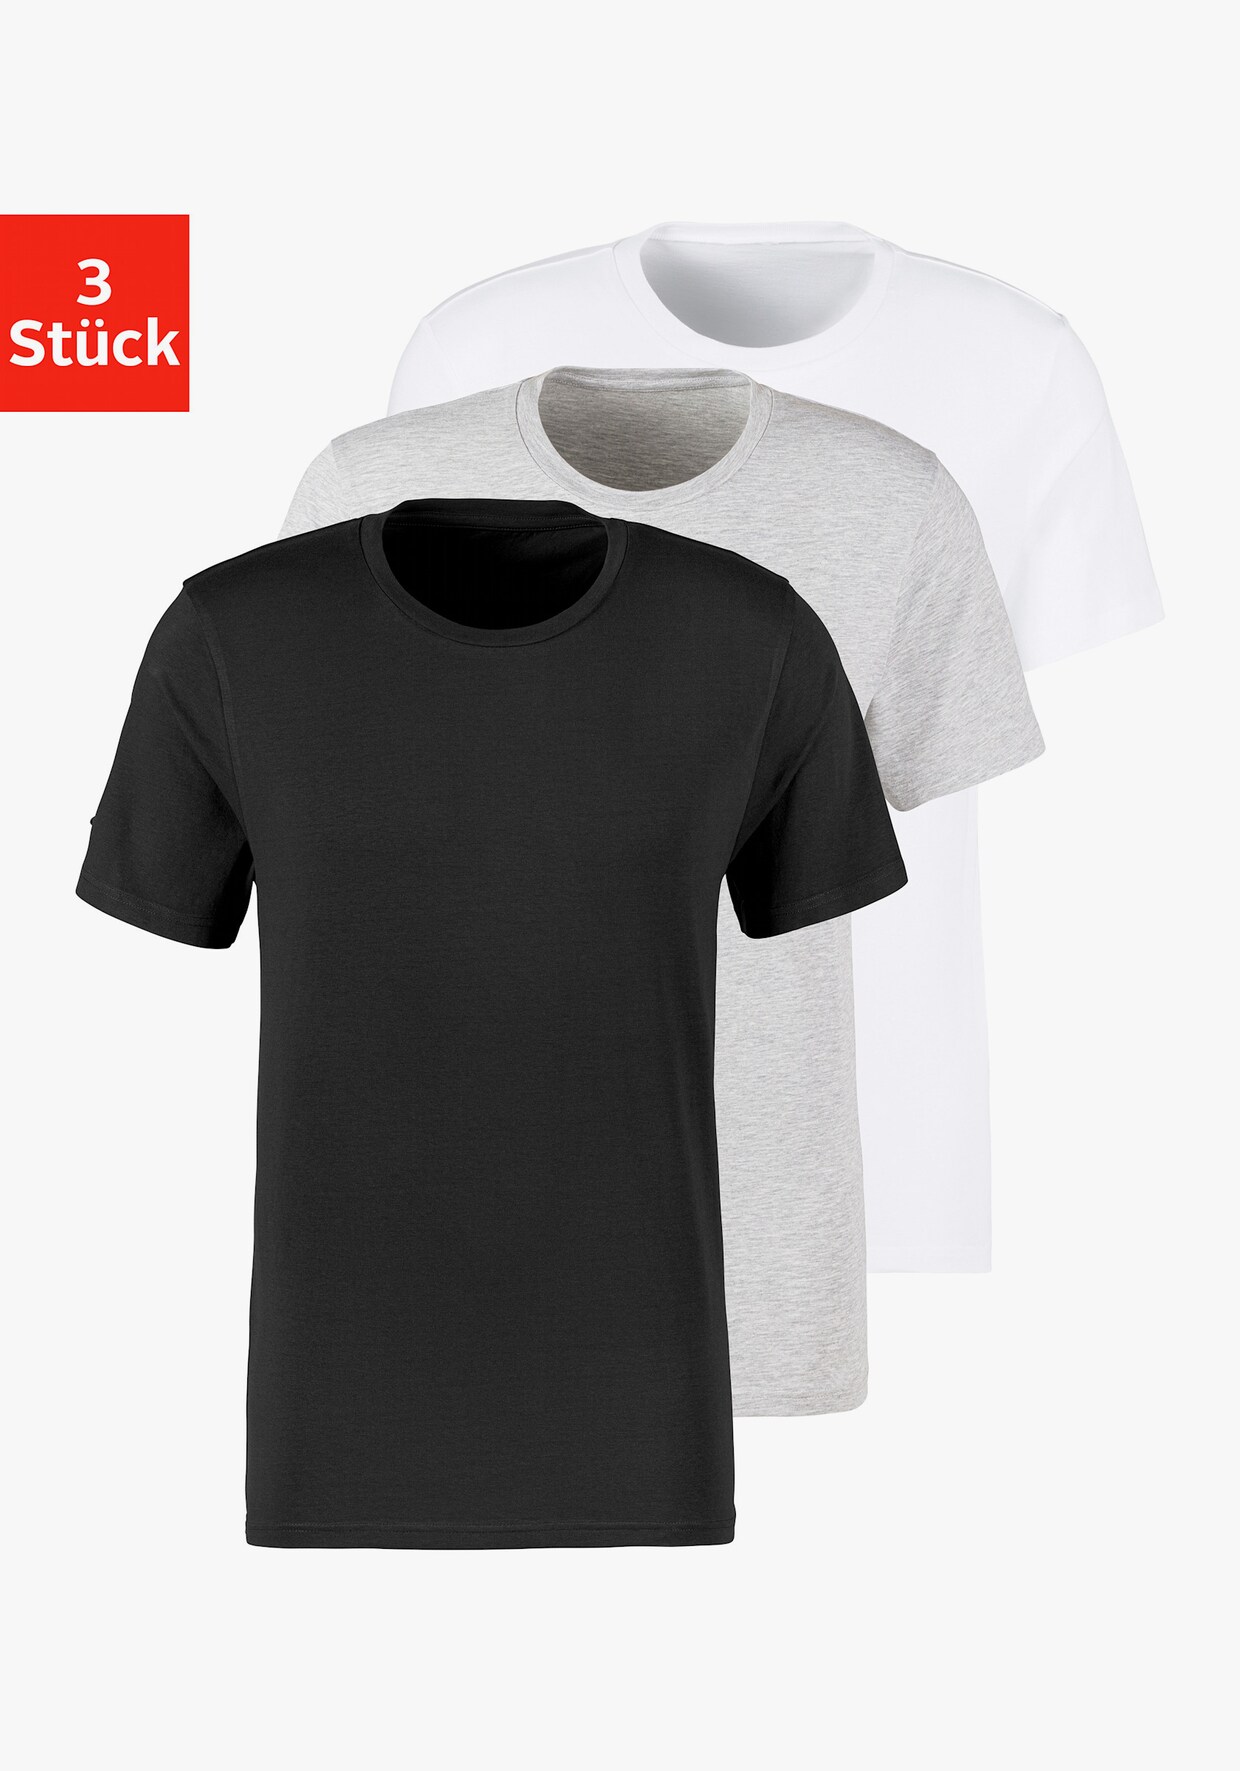 Bruno Banani T-Shirt - schwarz, grau-meliert, weiß